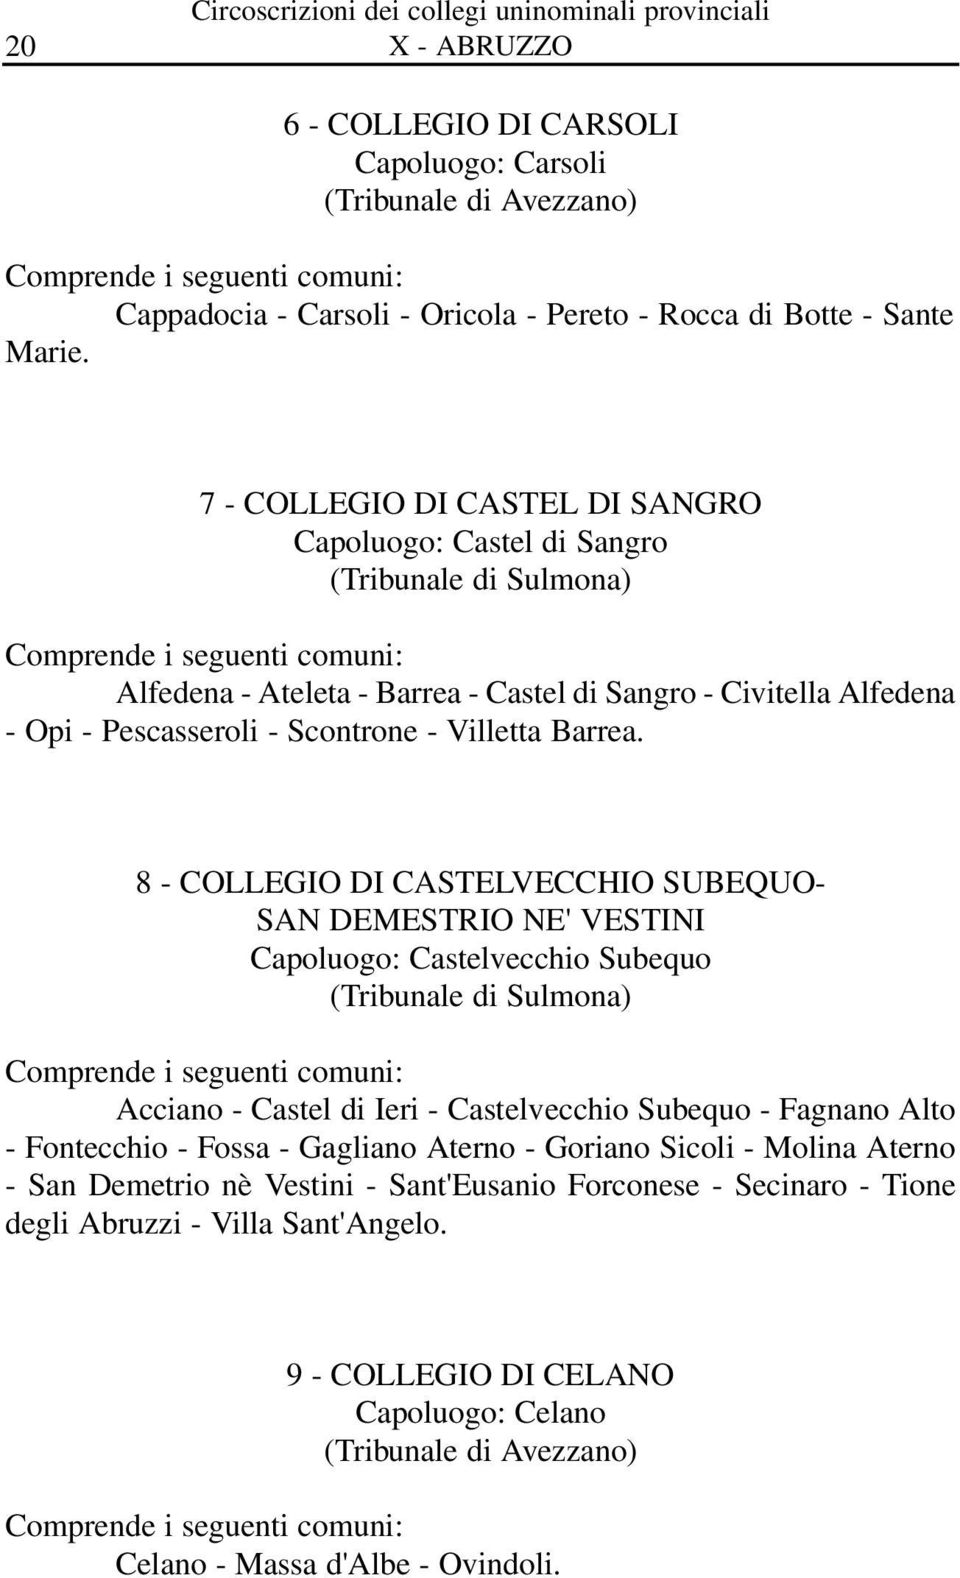 7 - COLLEGIO DI CASTEL DI SANGRO Capoluogo: Castel di Sangro (Tribunale di Sulmona) Alfedena - Ateleta - Barrea - Castel di Sangro - Civitella Alfedena - Opi - Pescasseroli - Scontrone - Villetta